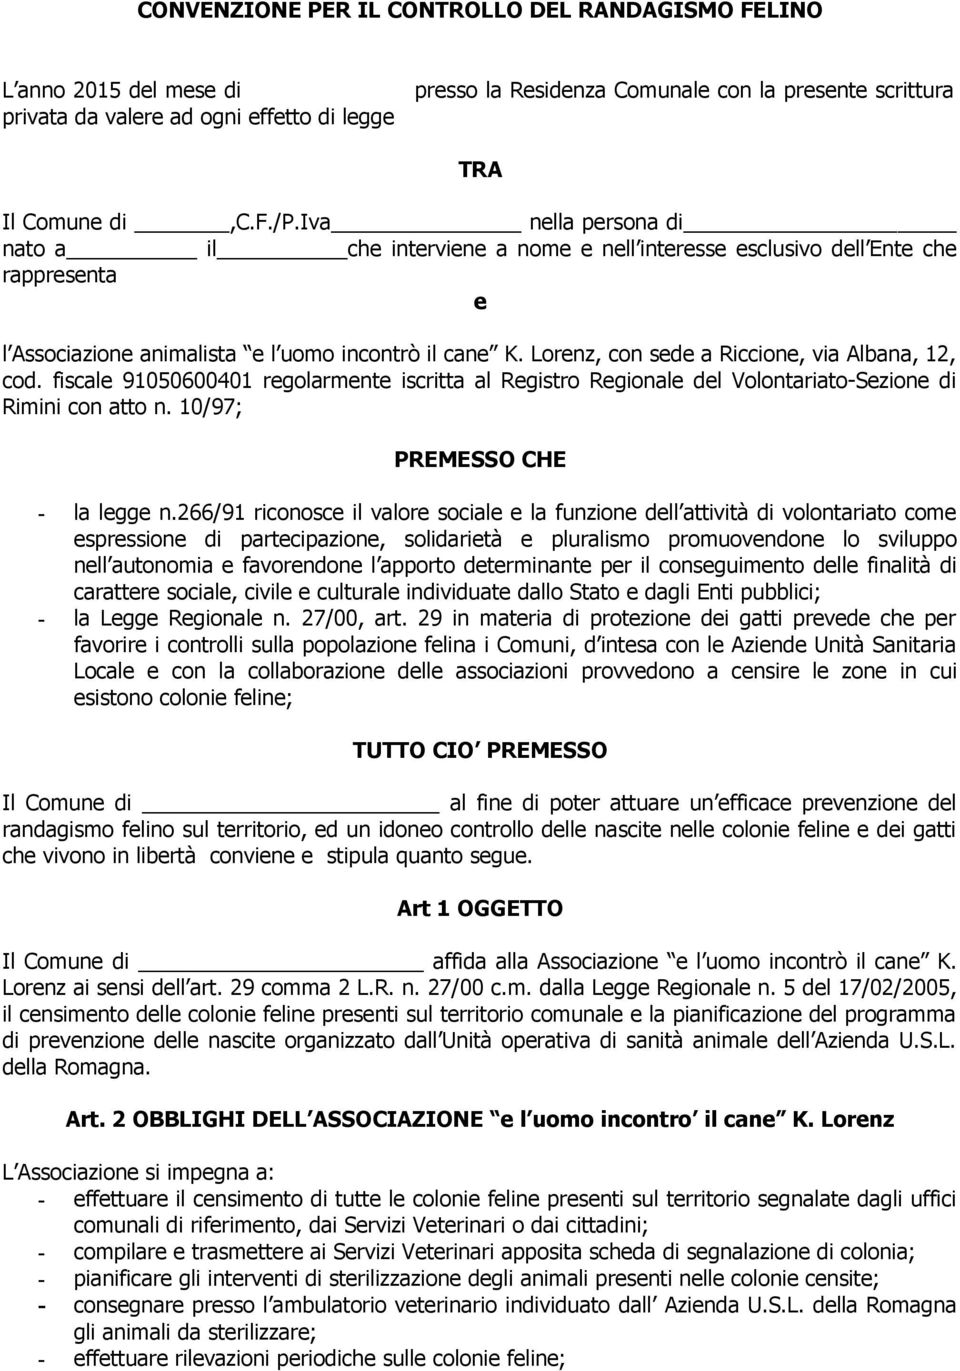 Lorenz, con sede a Riccione, via Albana, 12, cod. fiscale 91050600401 regolarmente iscritta al Registro Regionale del Volontariato-Sezione di Rimini con atto n. 10/97; PREMESSO CHE - la legge n.